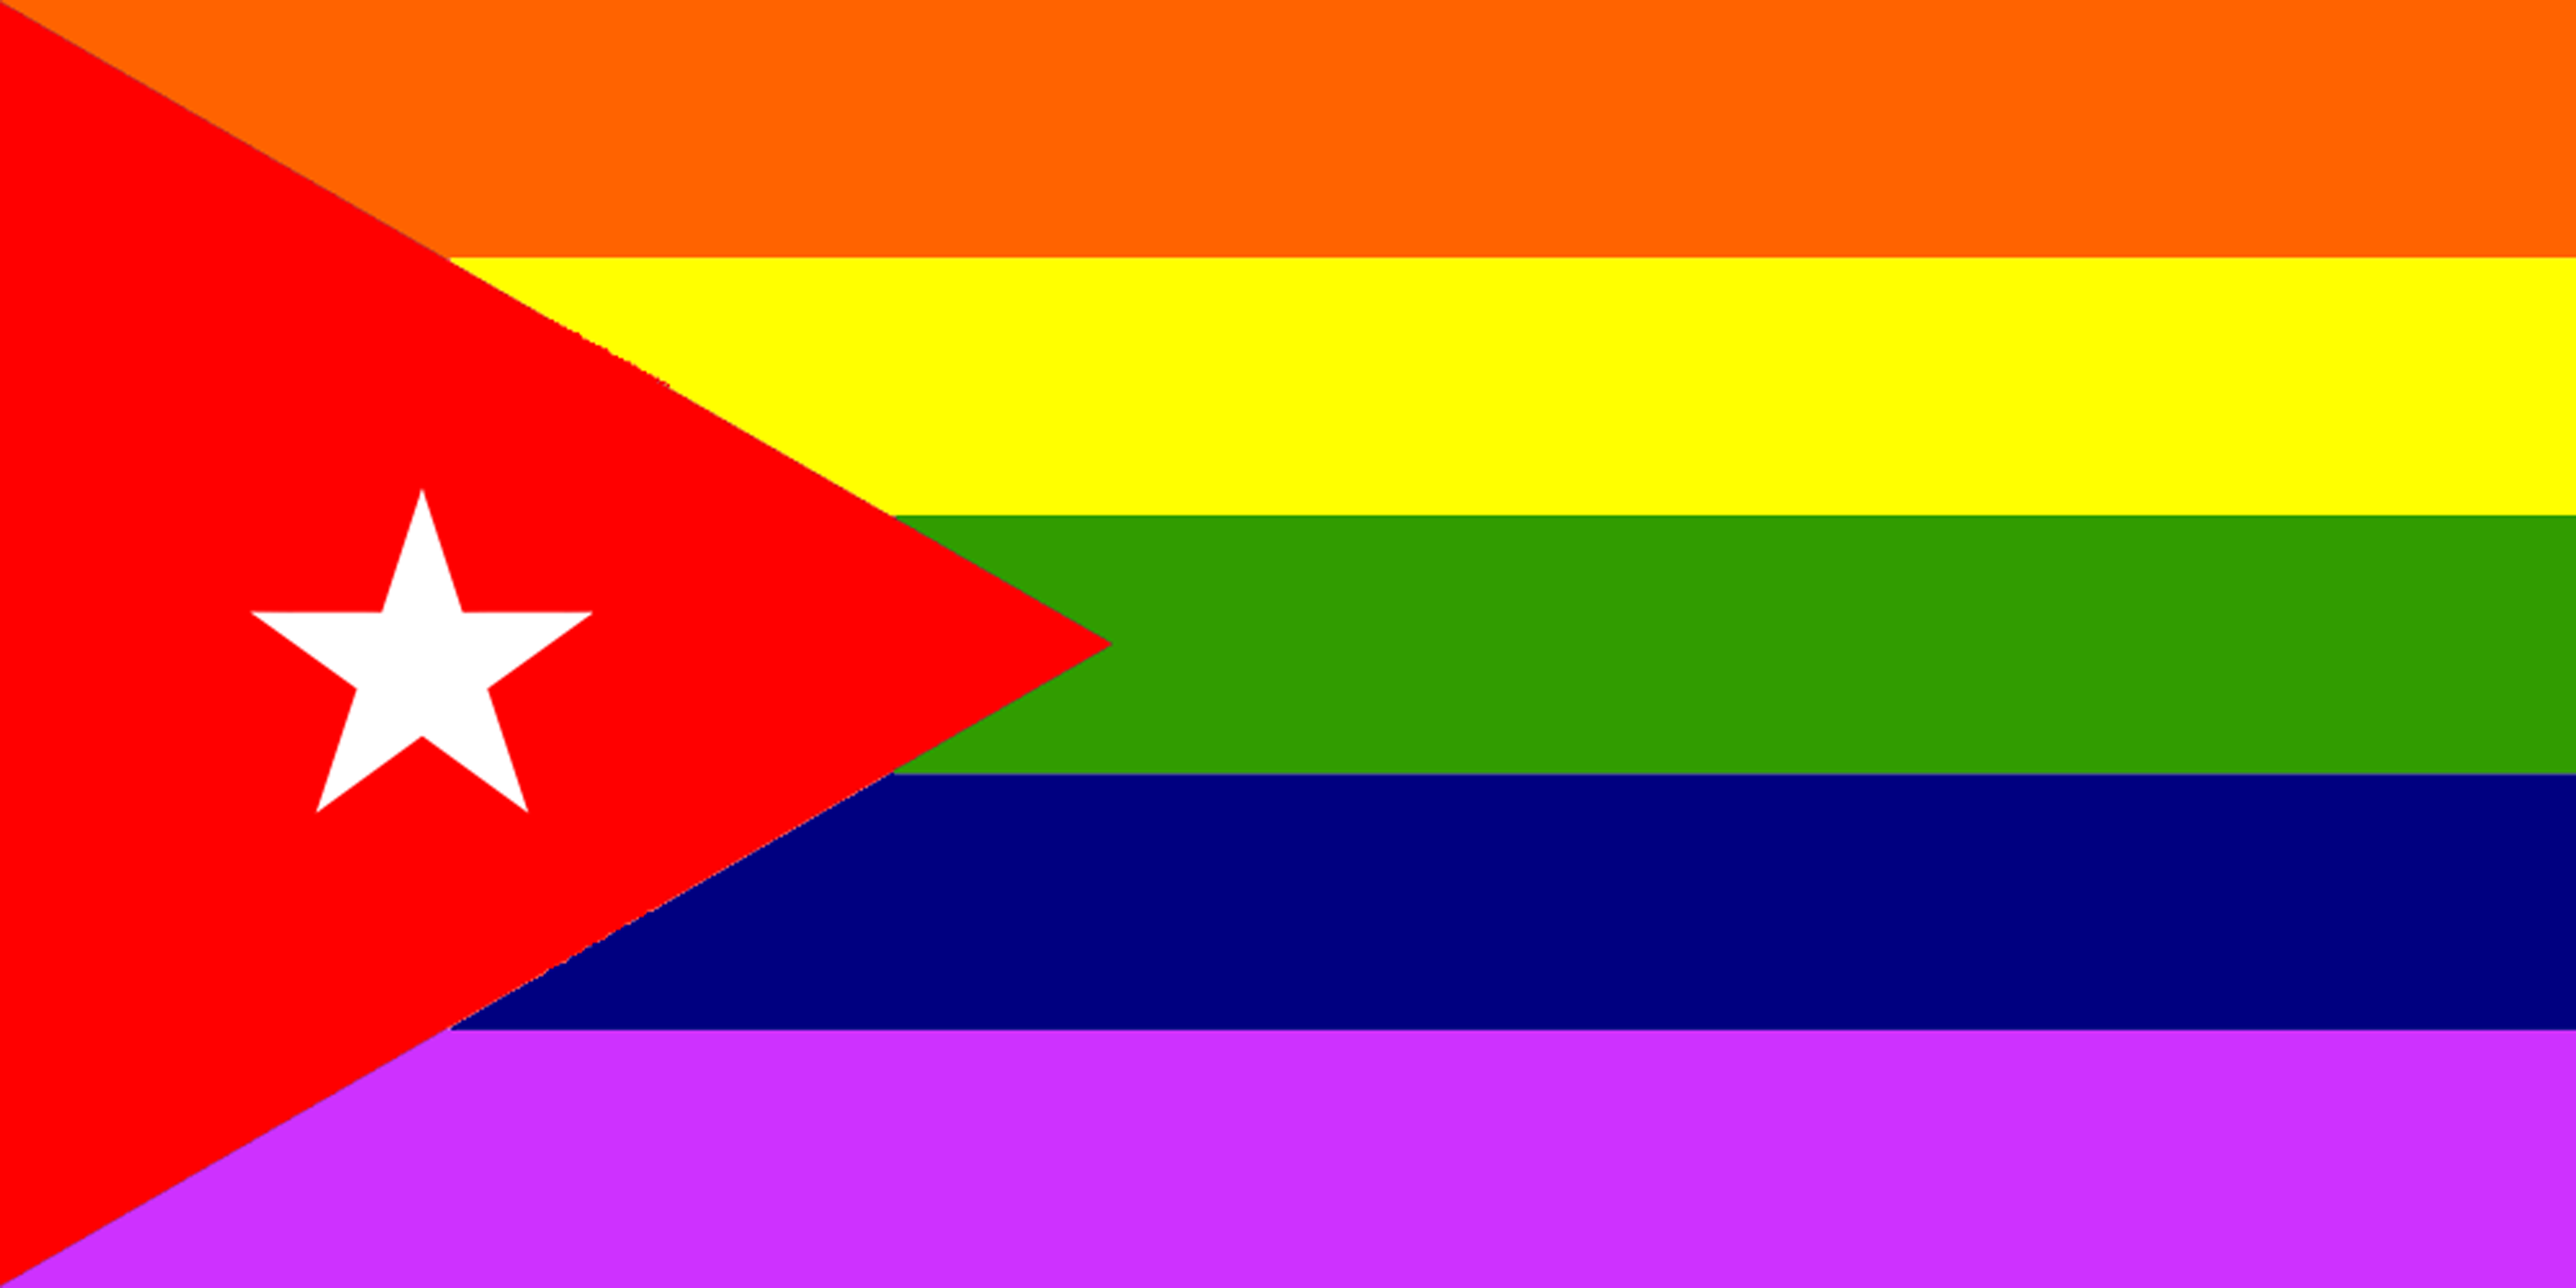 Bandera Cubana LGBT lanzada por activistas